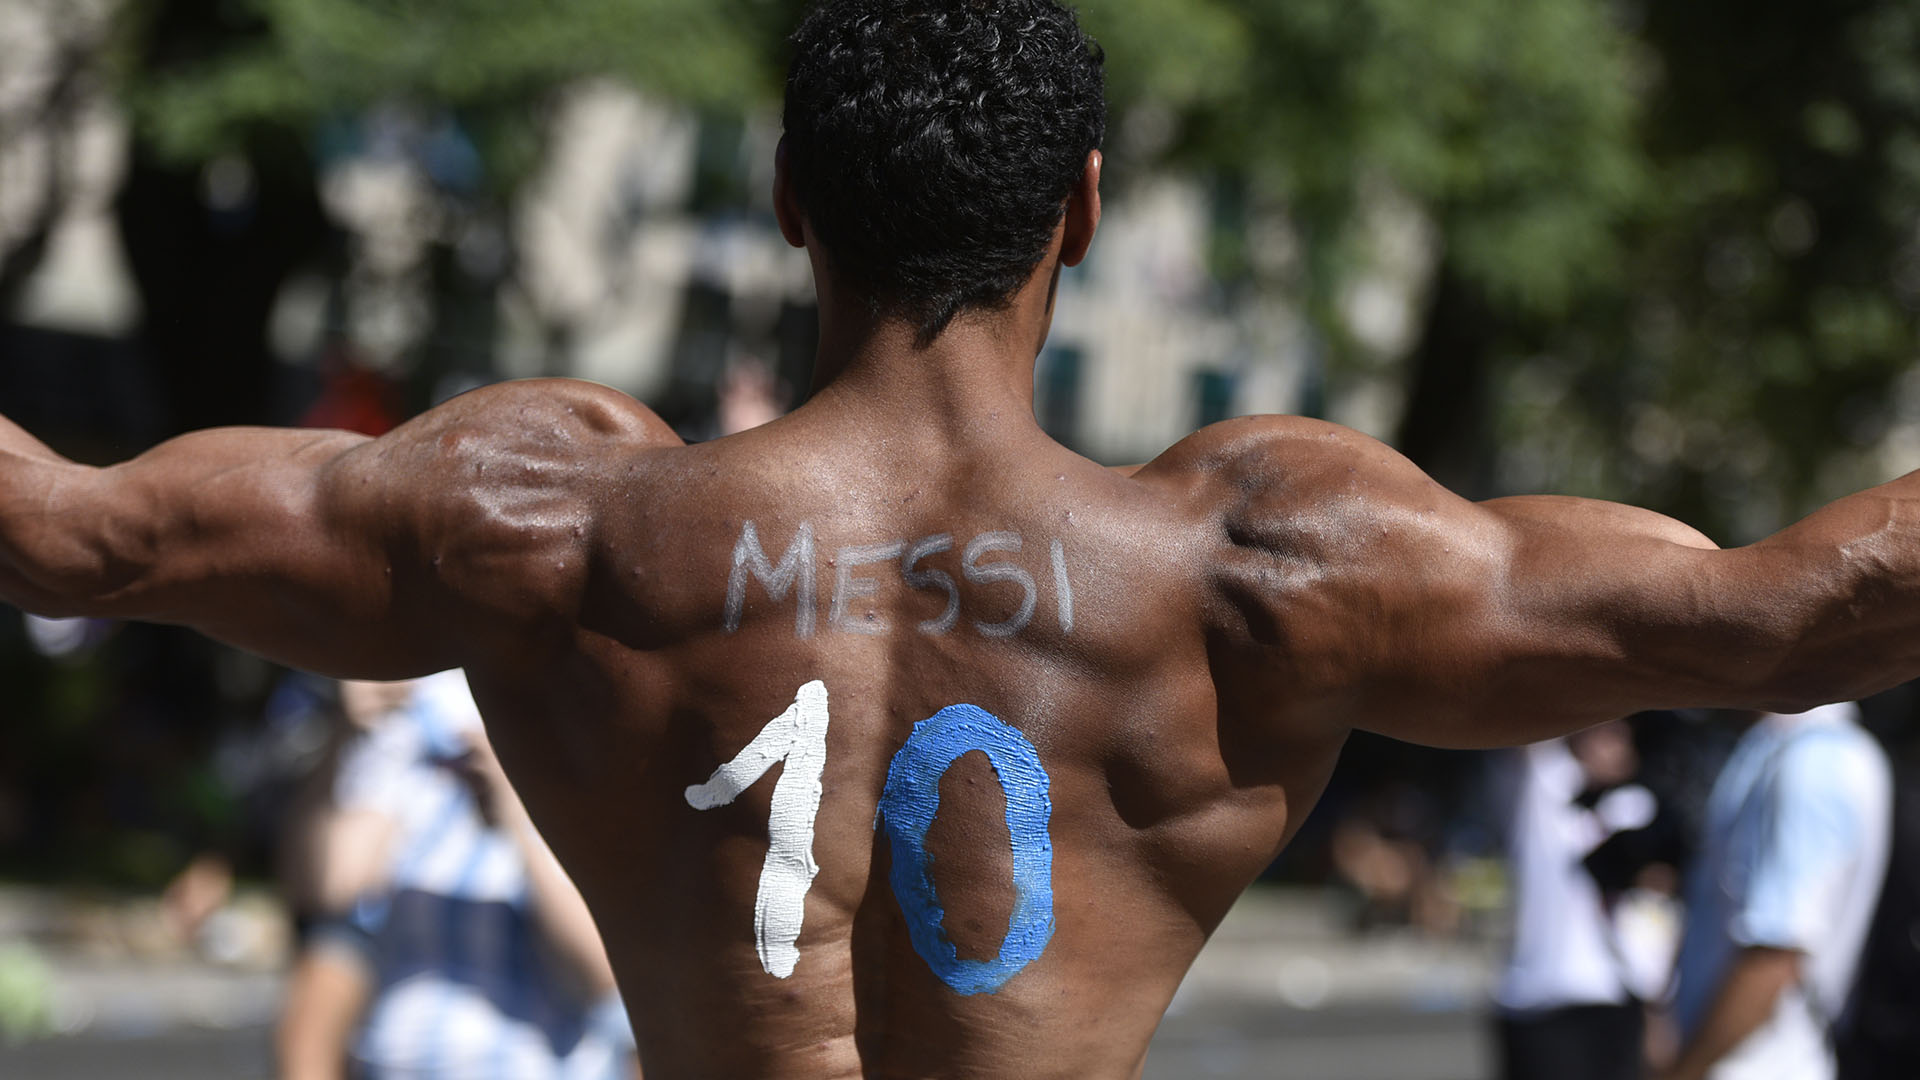 La espalda ancha por el triunfo y el 10 de Messi (Crédito: Adrian Escandar)